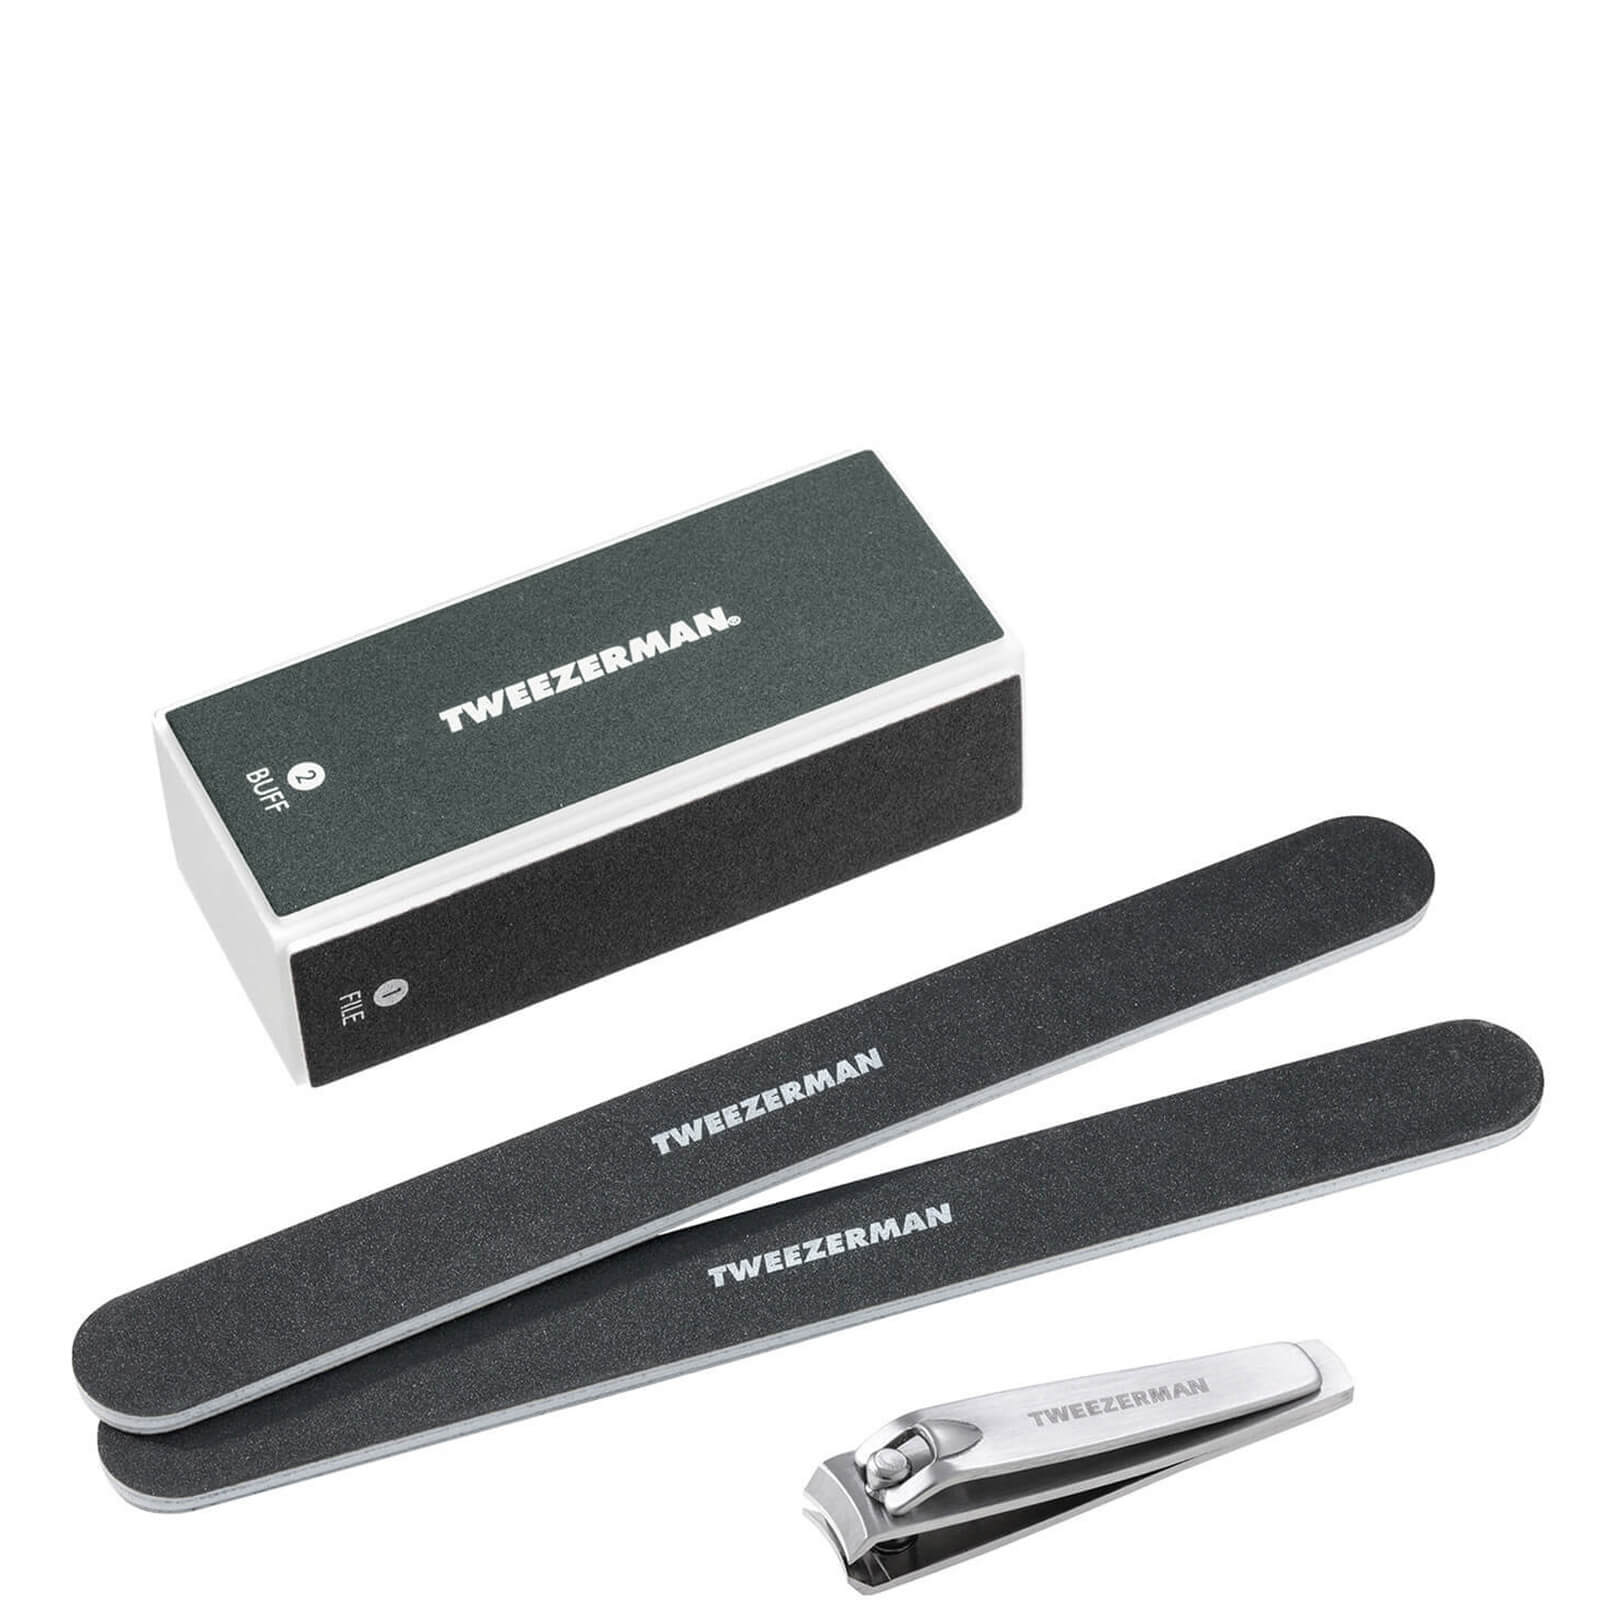 Tweezerman Manicure Kit In Black